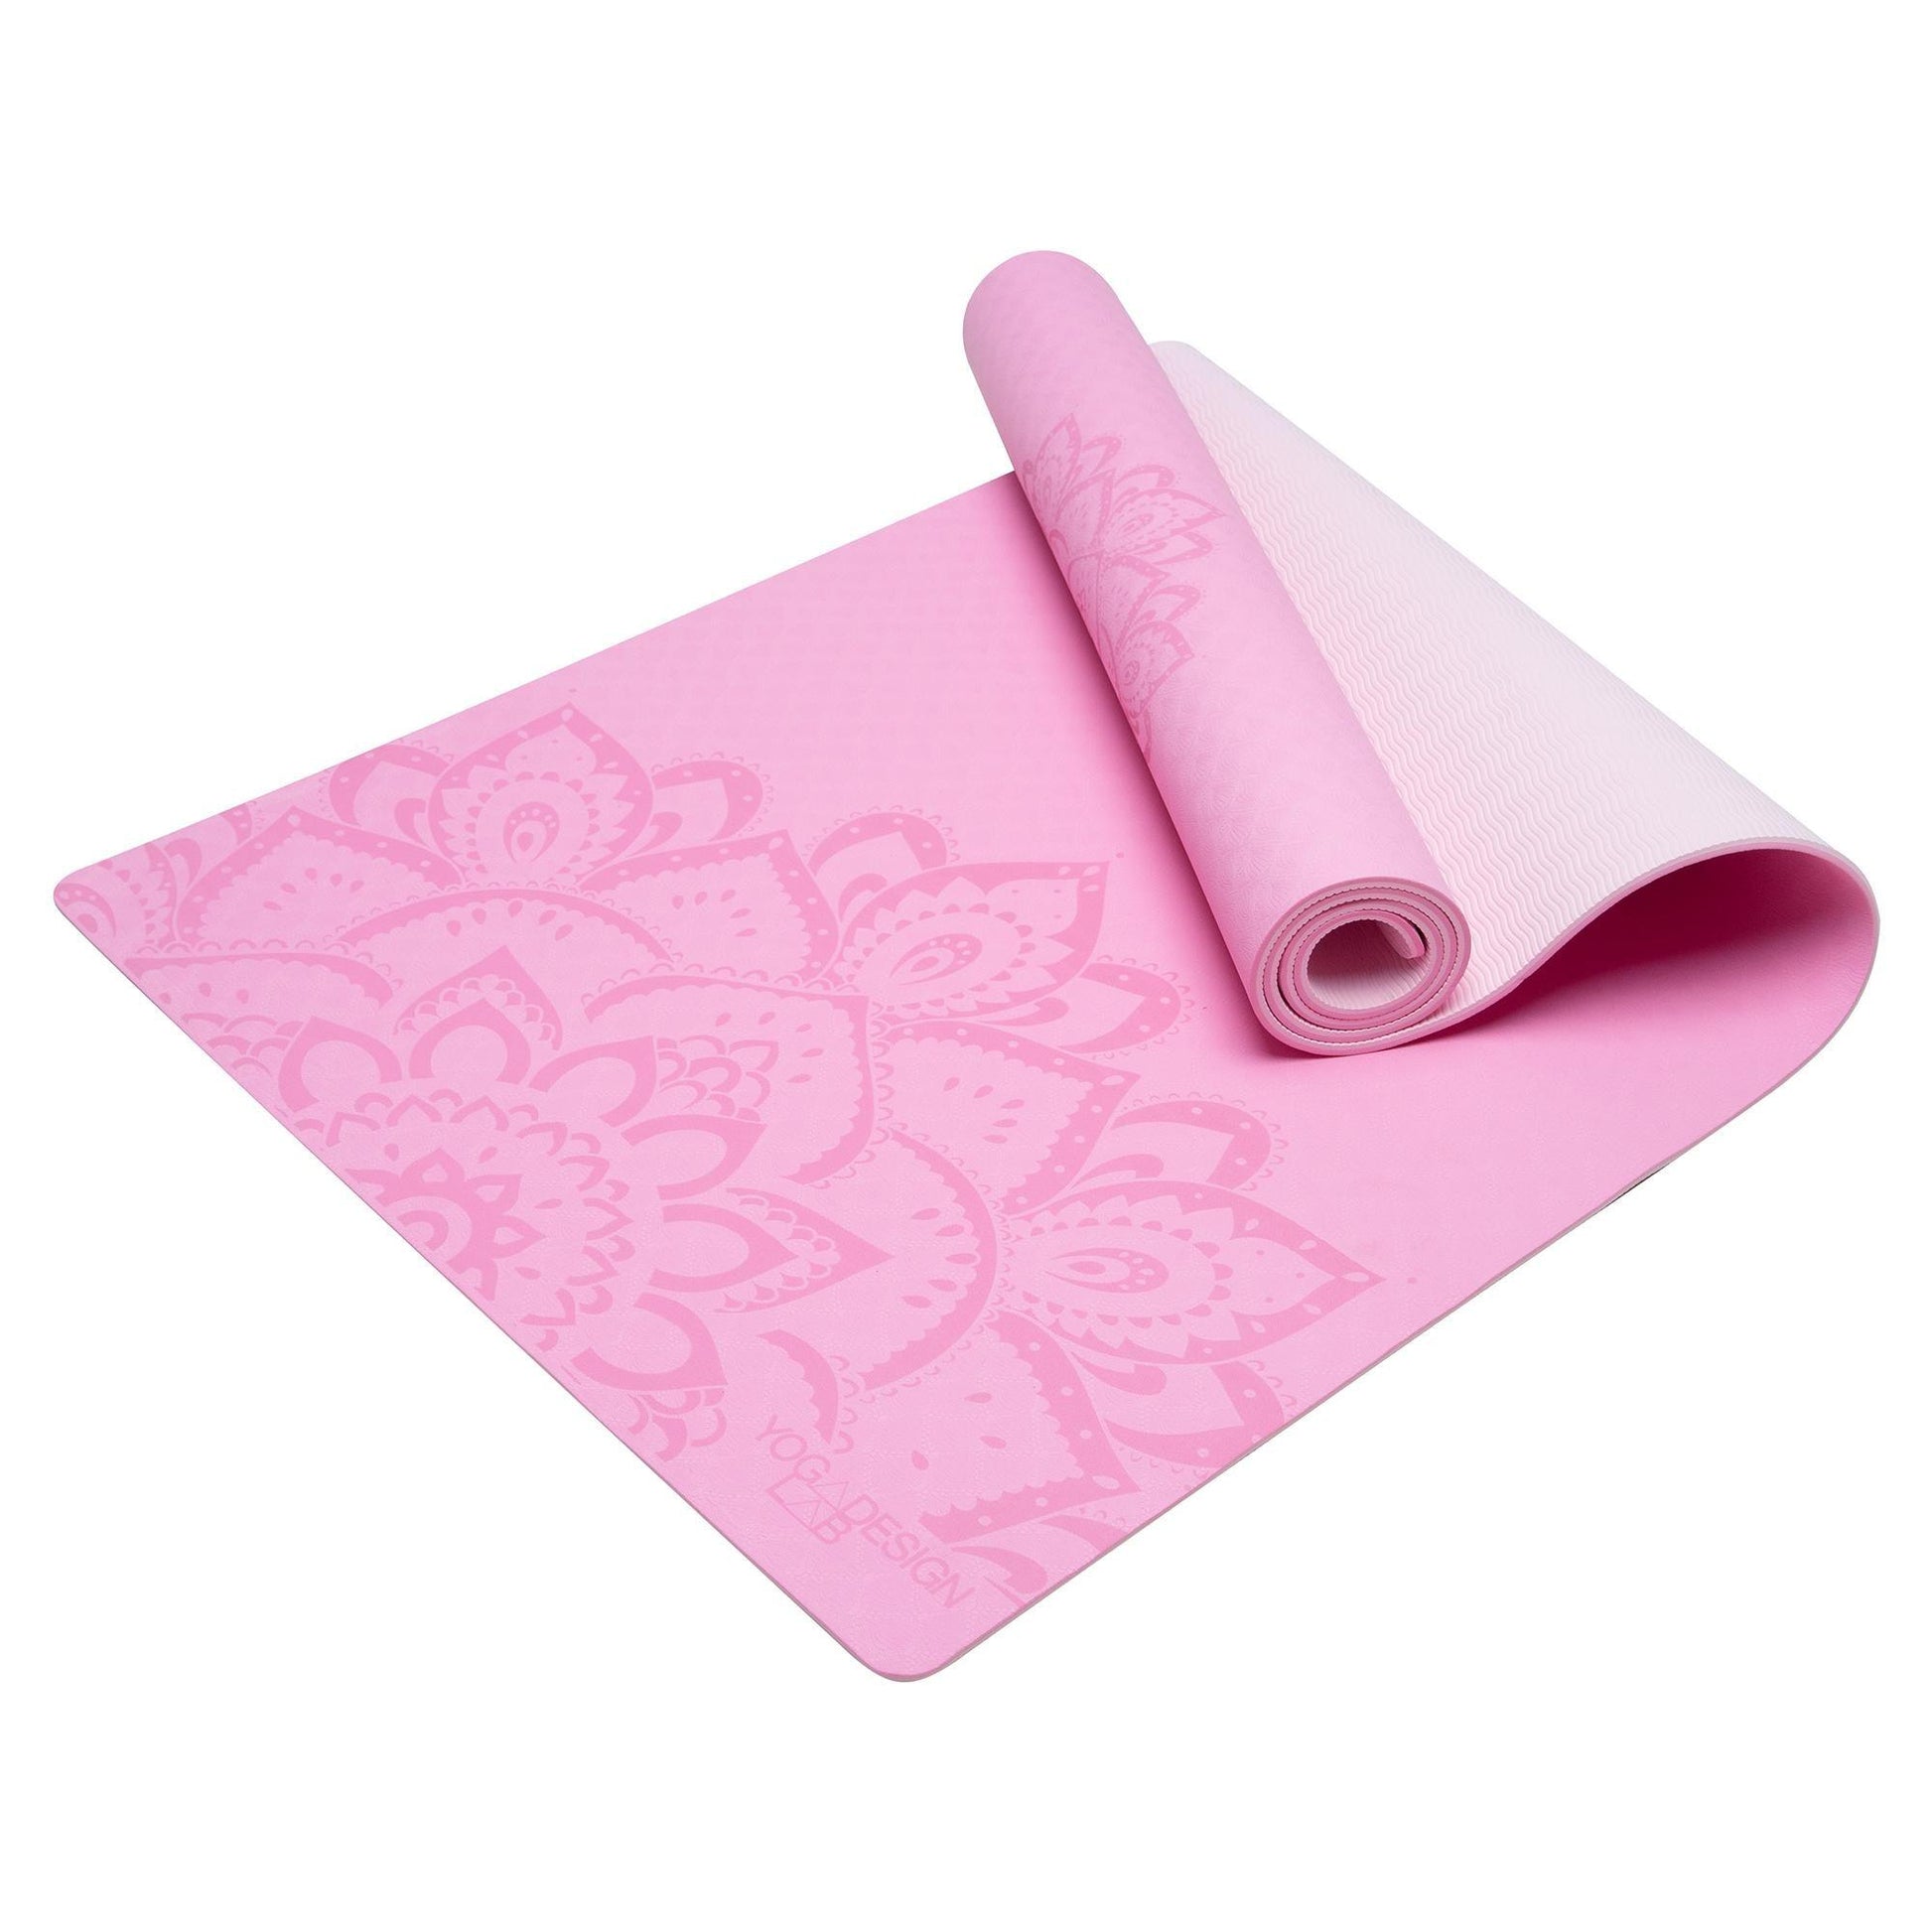 Flow Yoga Mat Pure Mandala Rose 6mm - Ideal Mat For Beginners